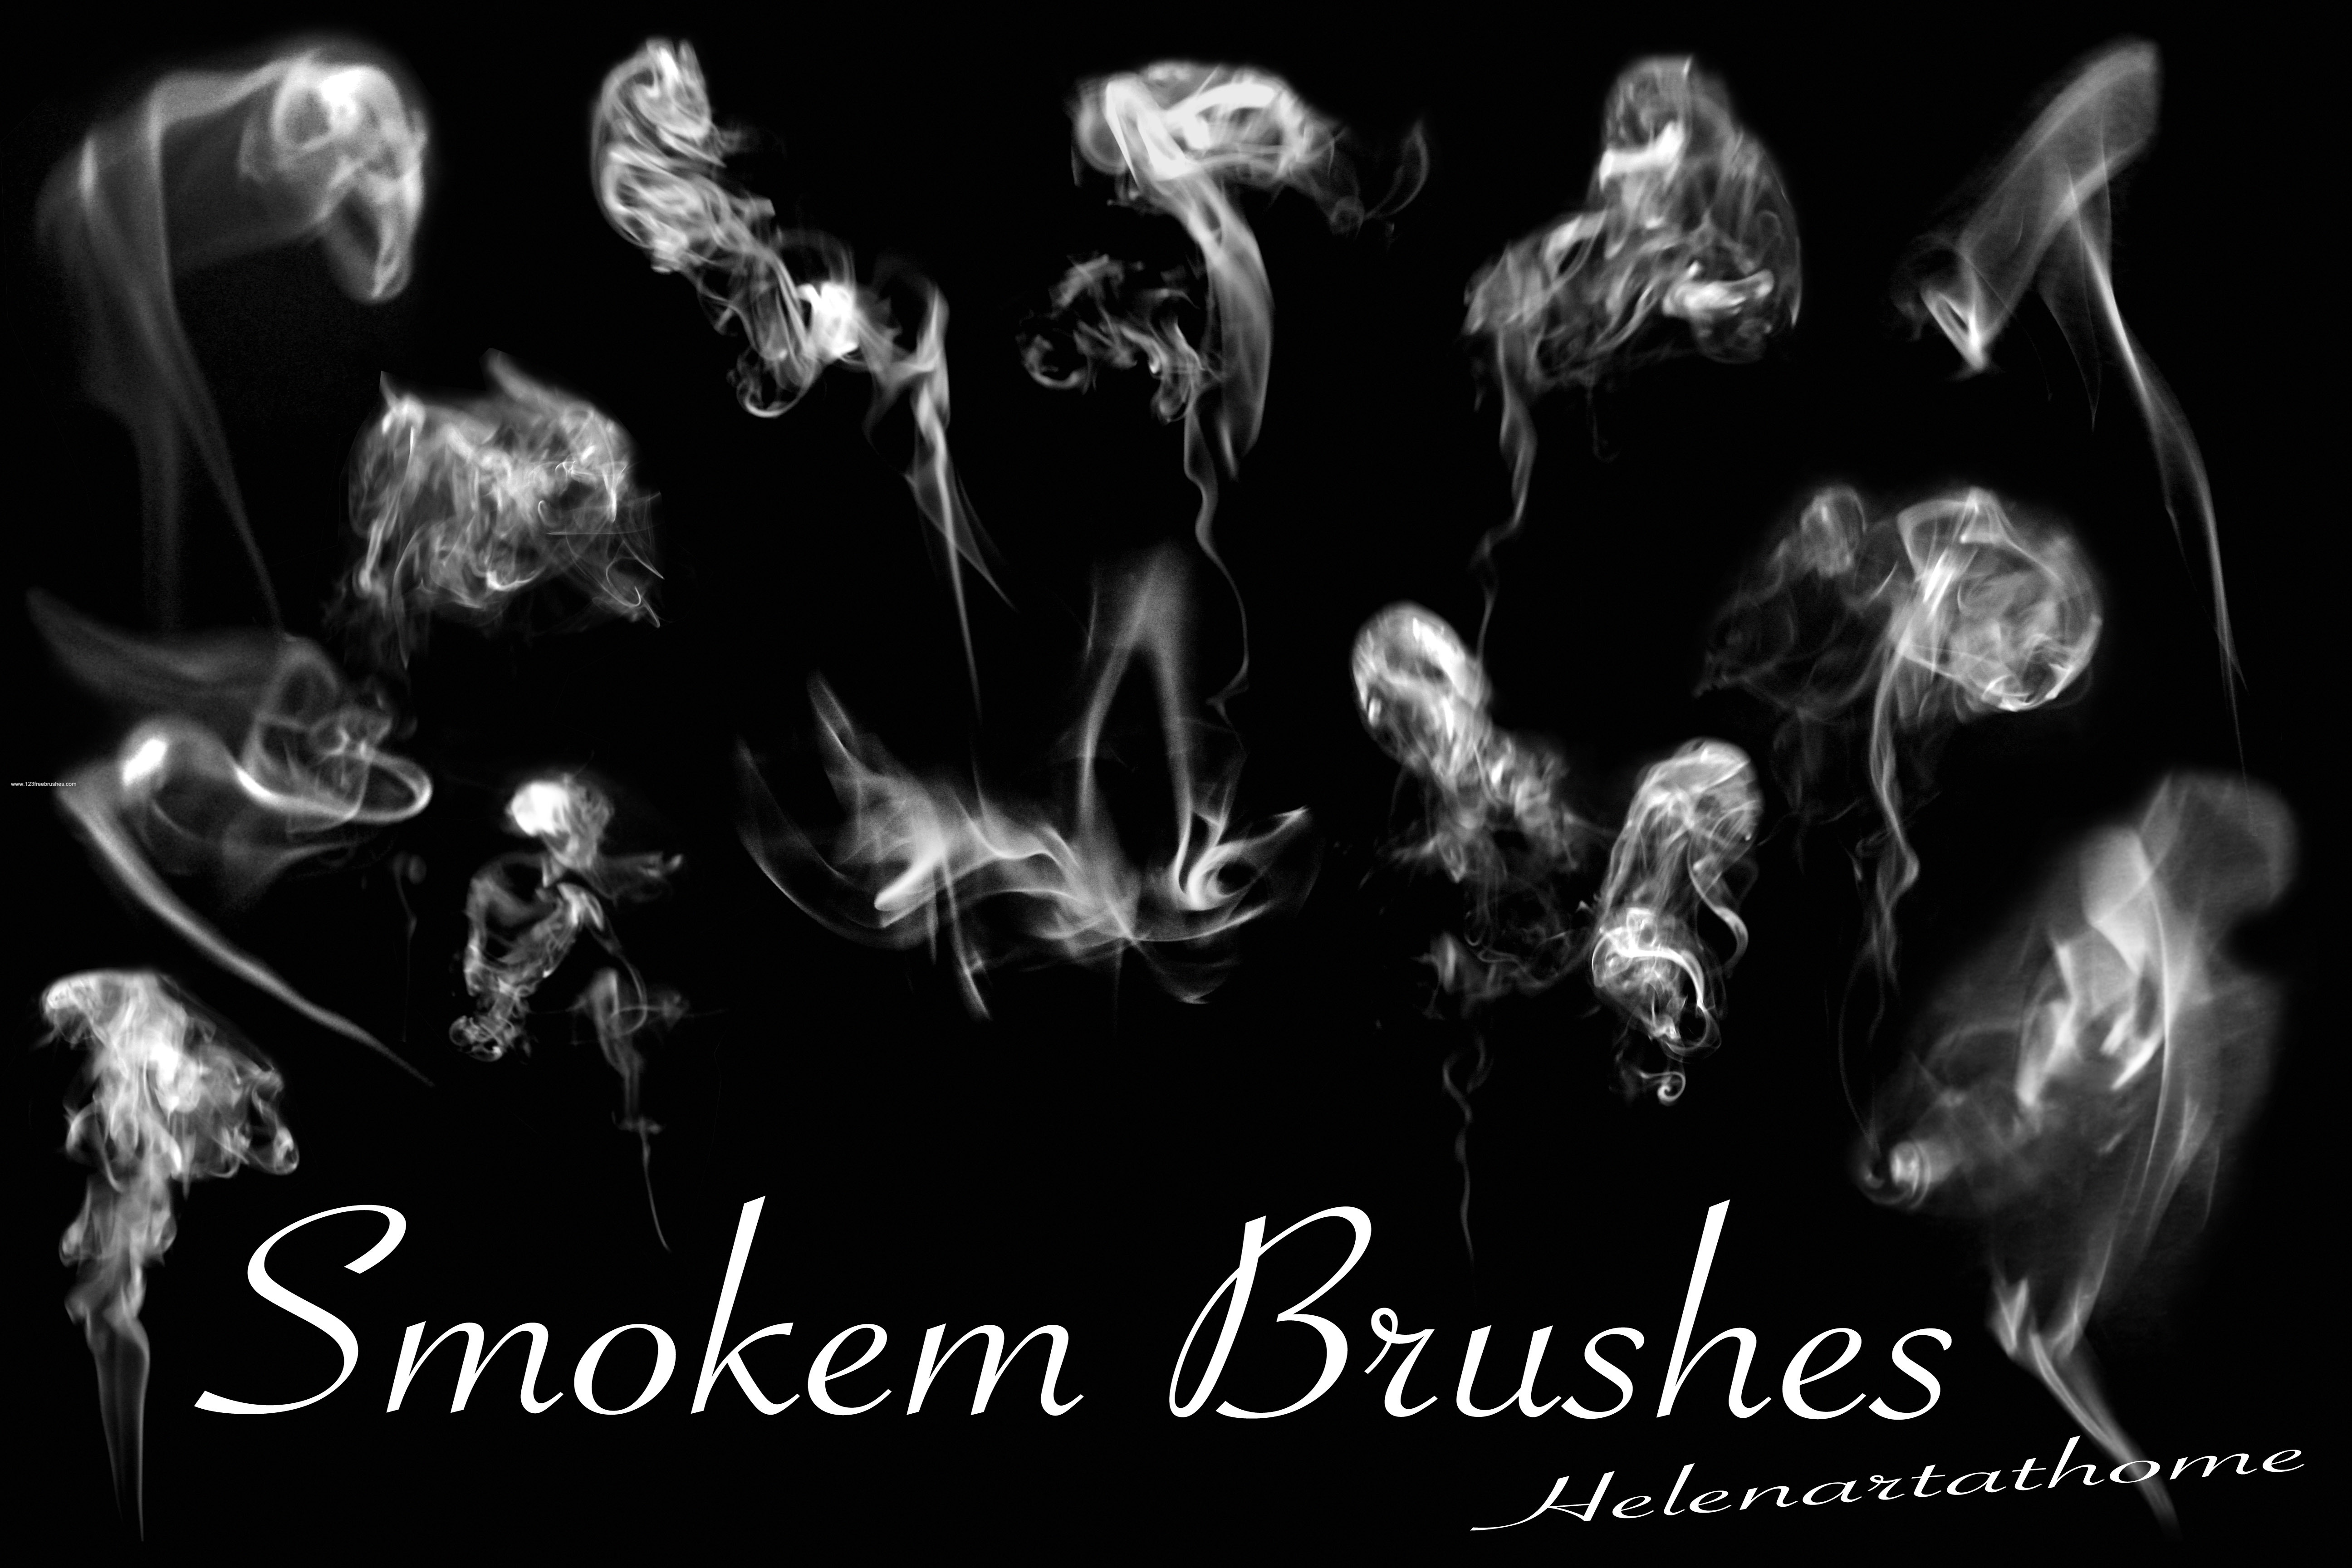 photoshop smoke brushes free download cs3